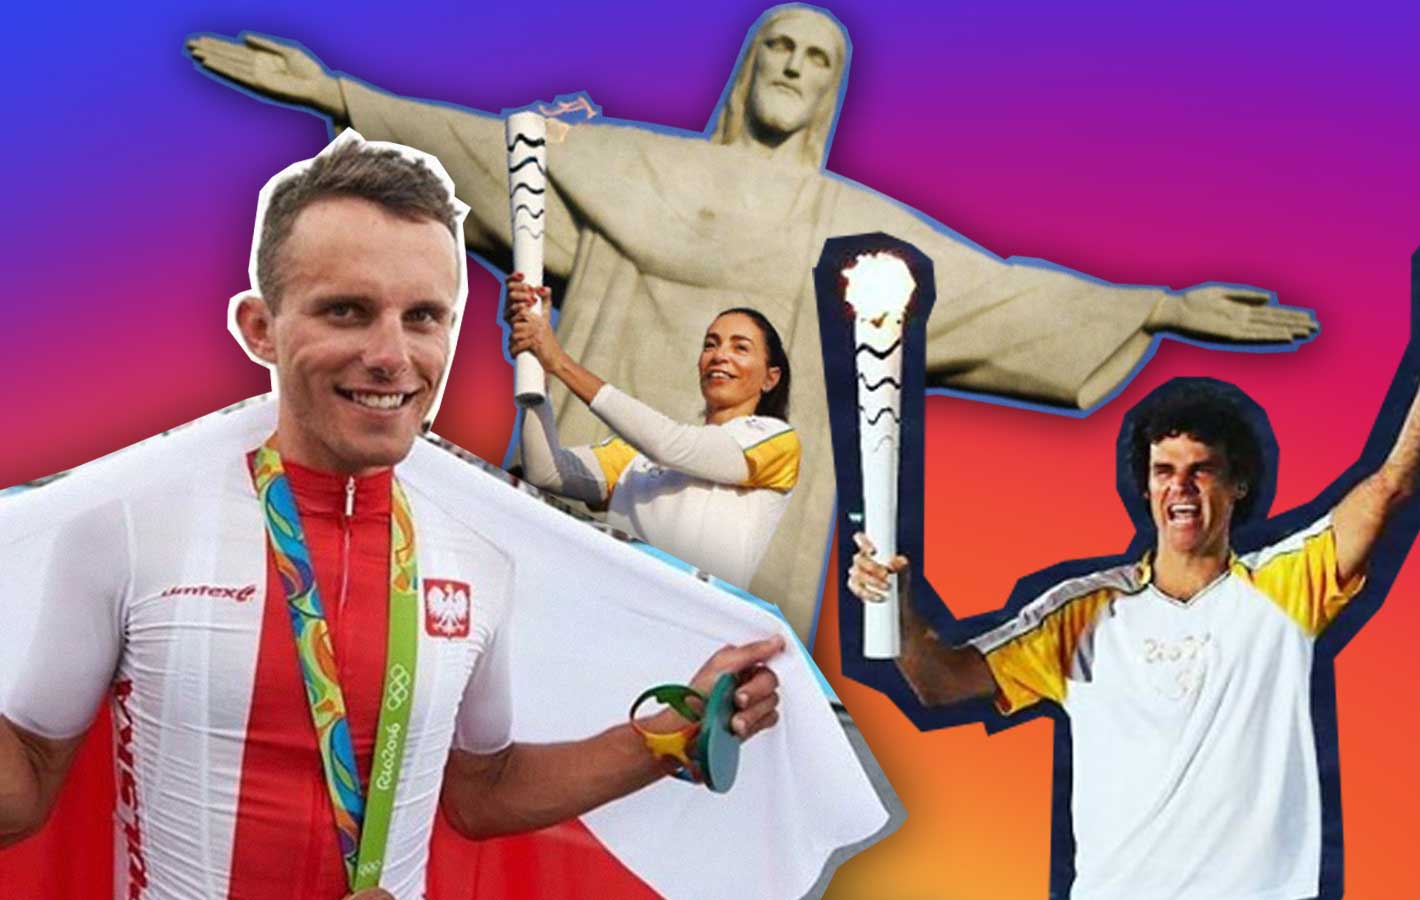 Igrzyska Olimpijskie w Rio: z tych profili na Instagramie dowiesz się wszystkiego